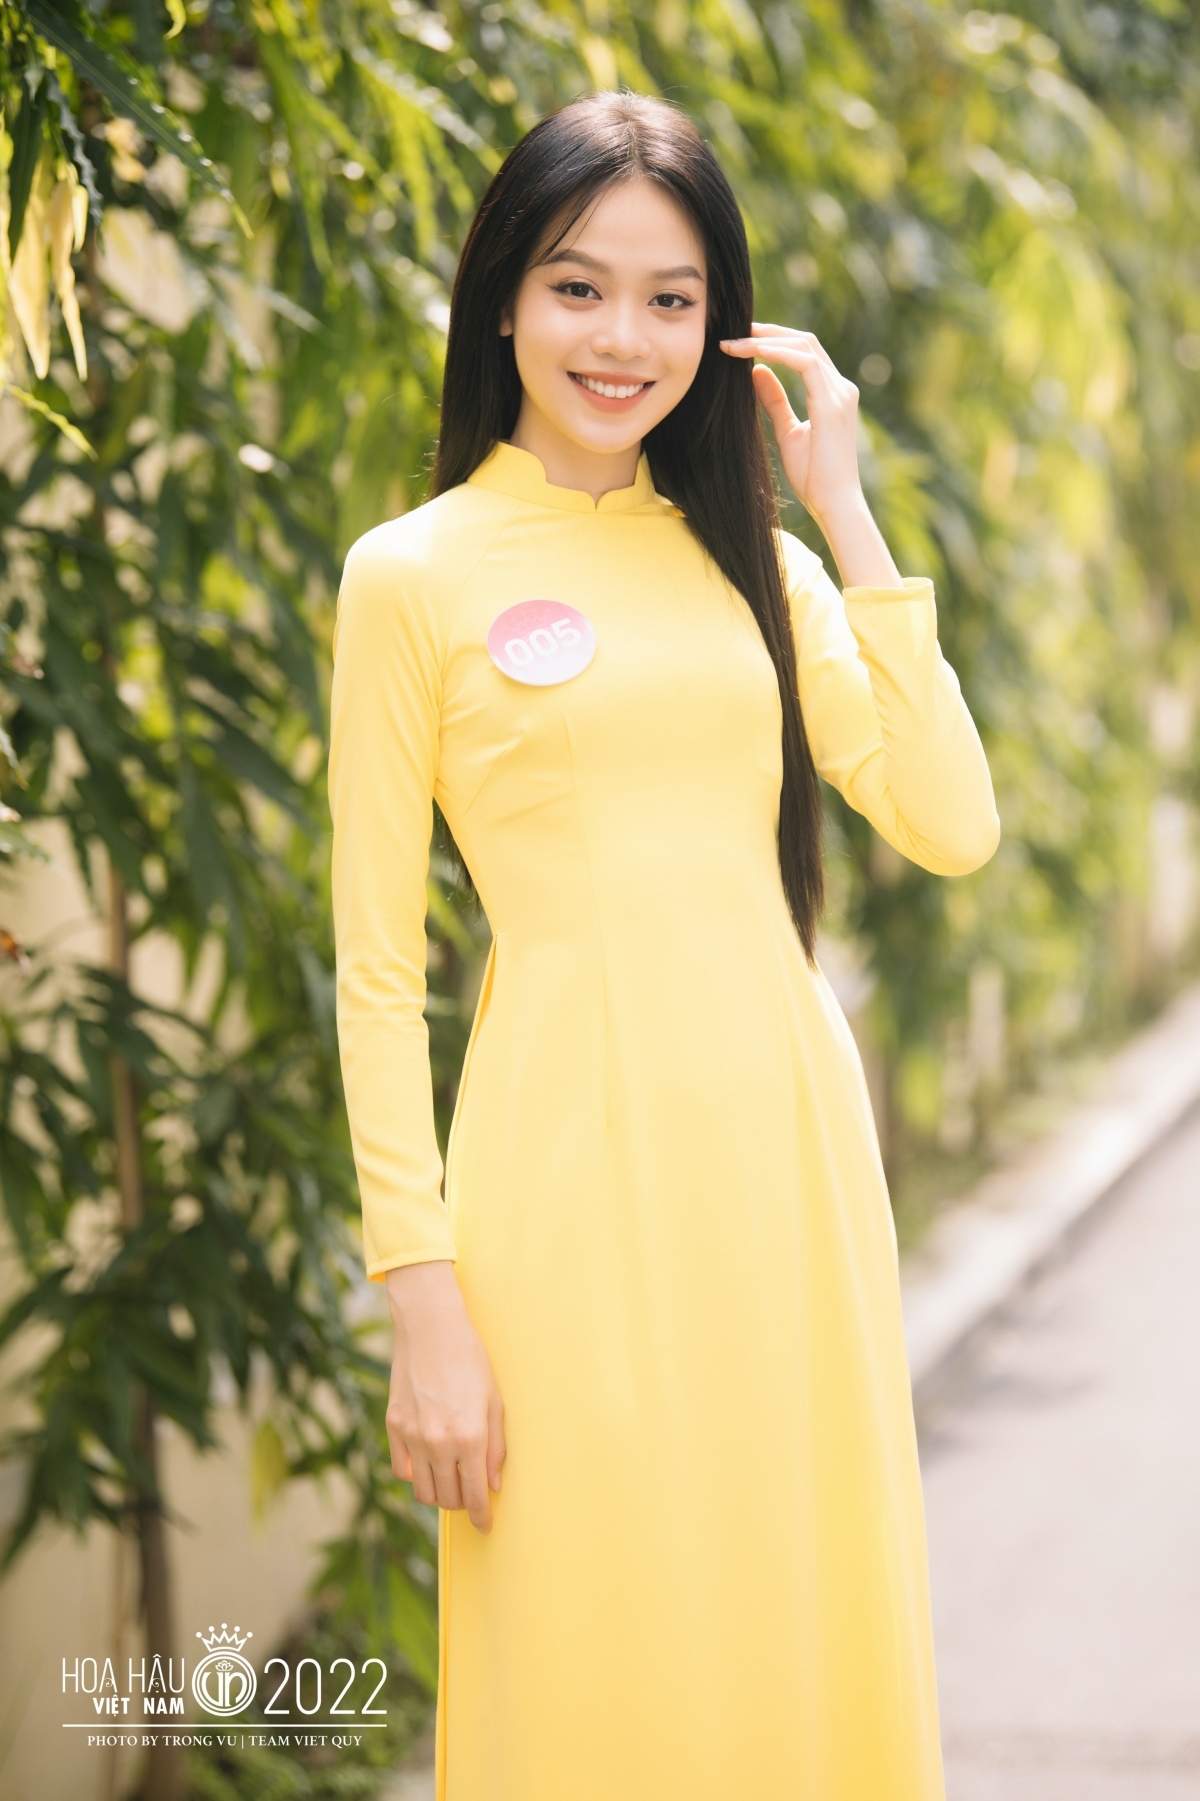 Nhan sắc  Hoa hậu Việt Nam 2022 Huỳnh Thị Thanh Thủy